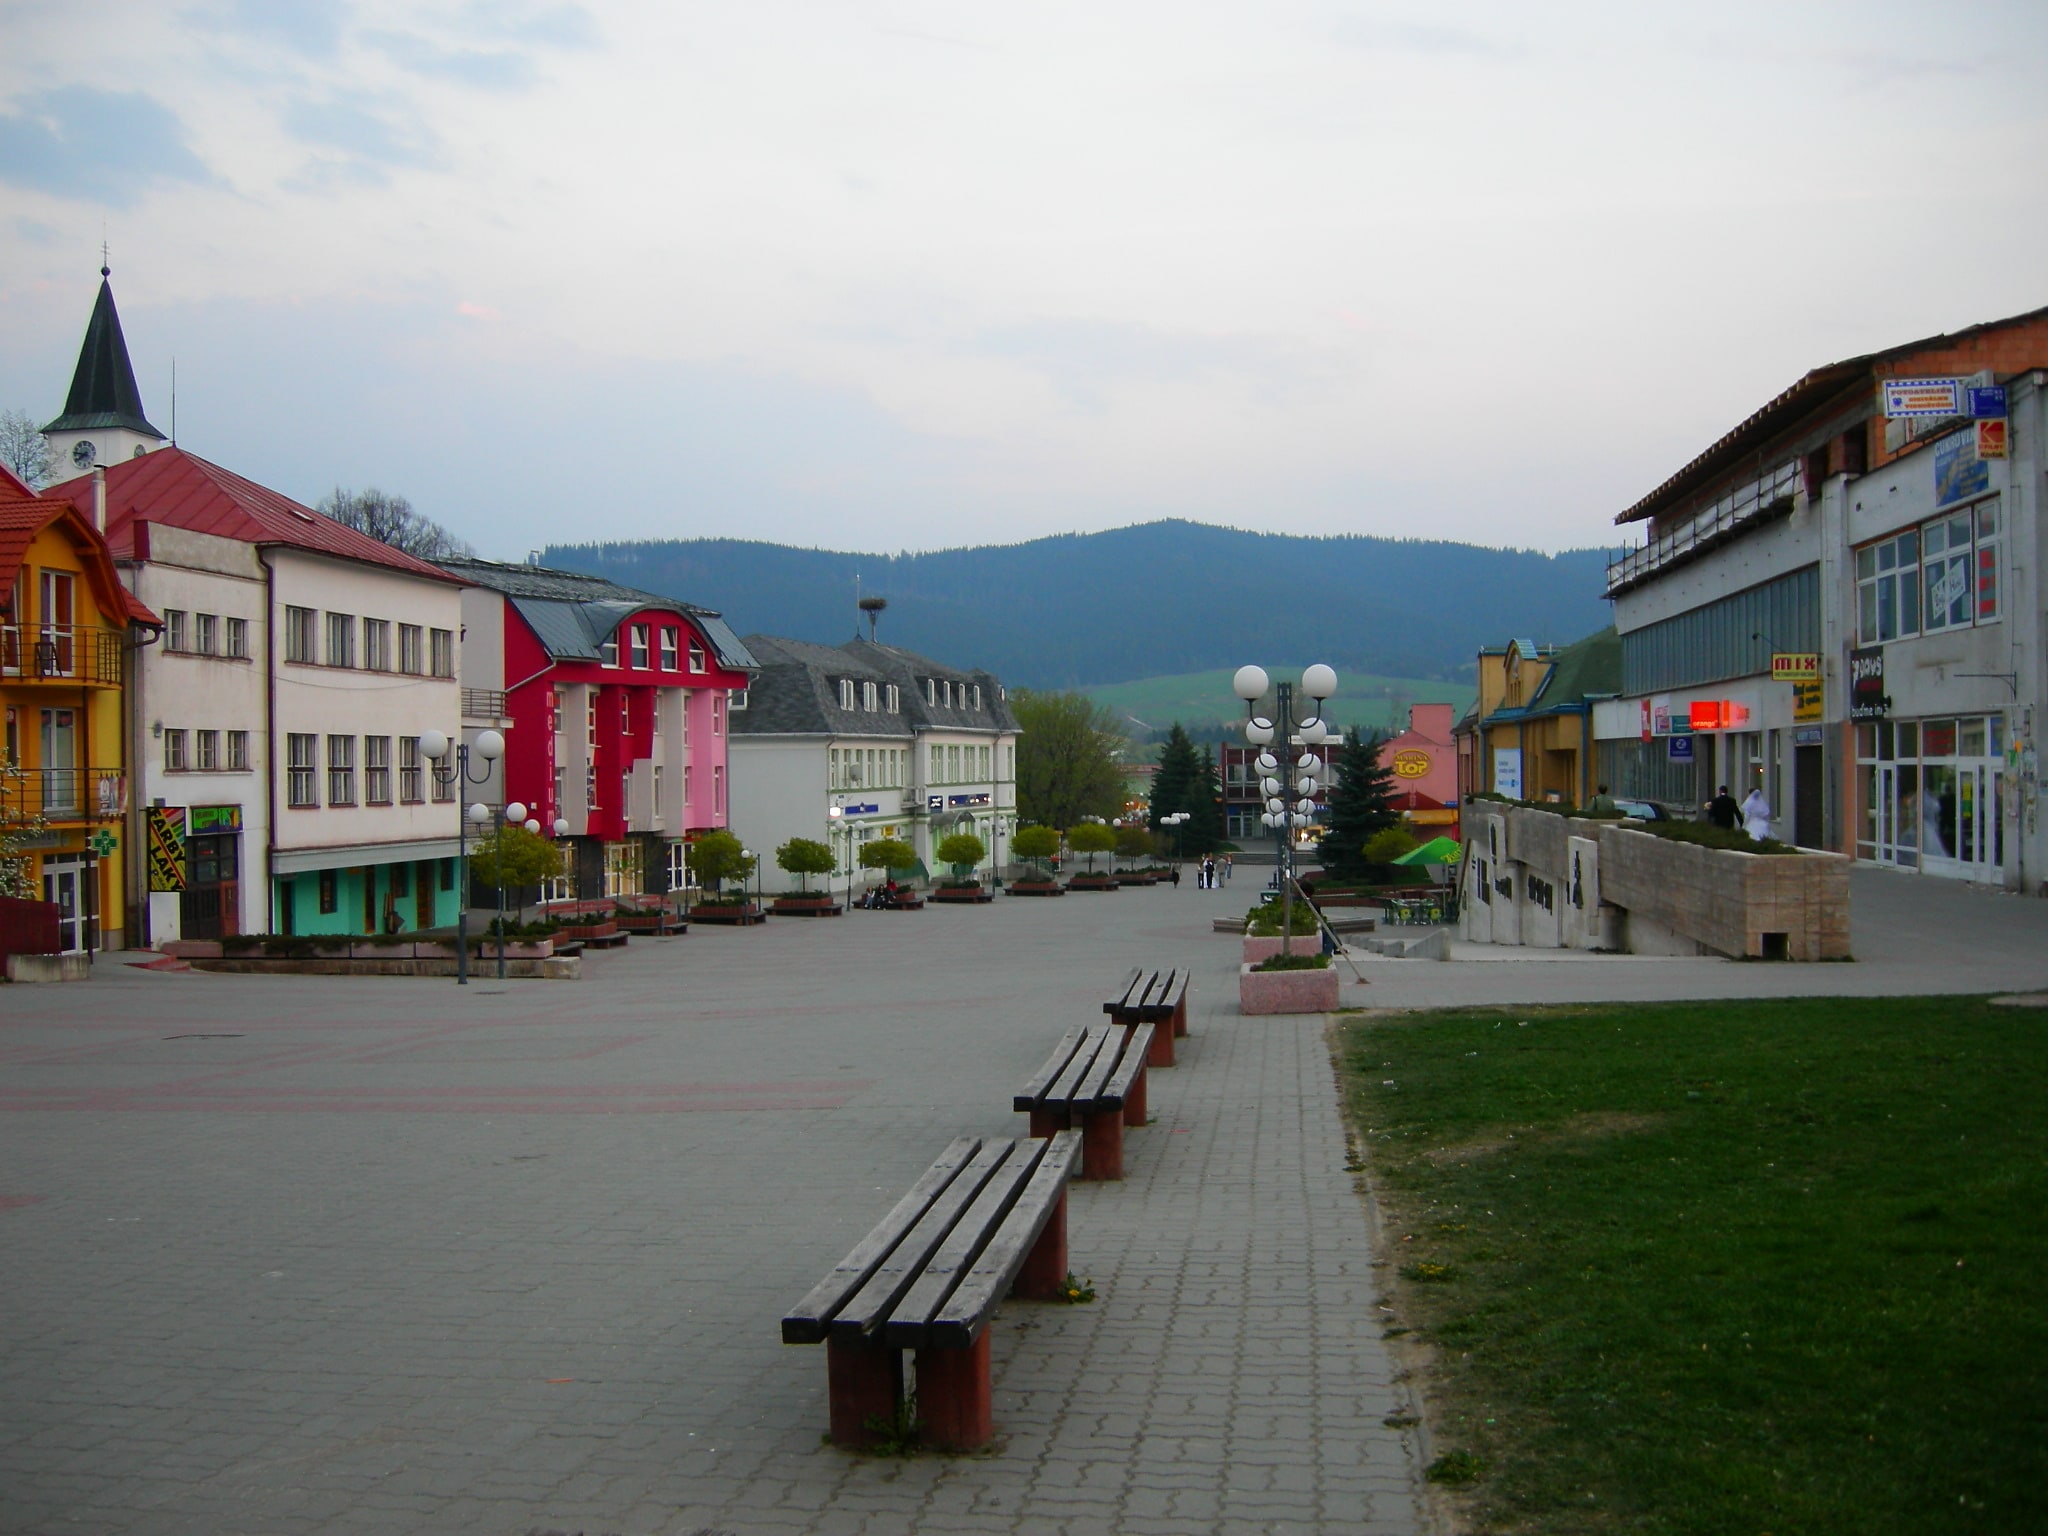 Námestovo, Slovakia